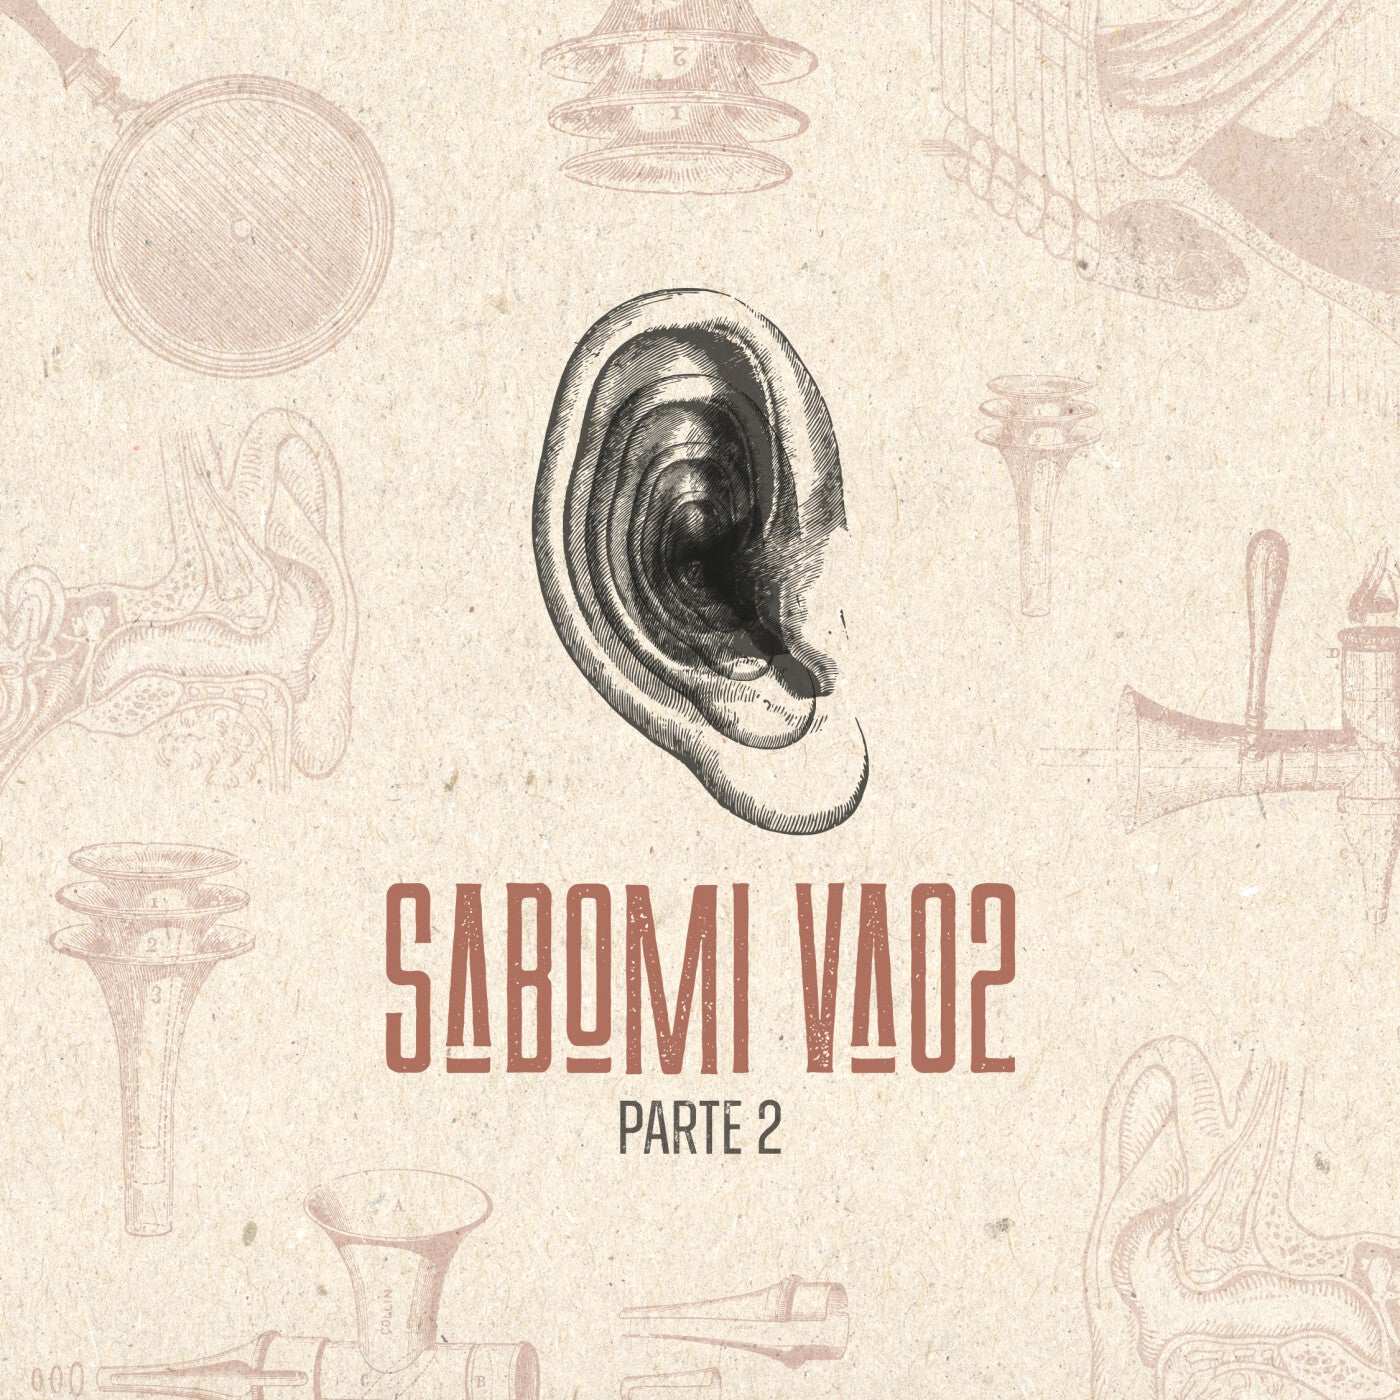 SABOMIVA02 - Part 2